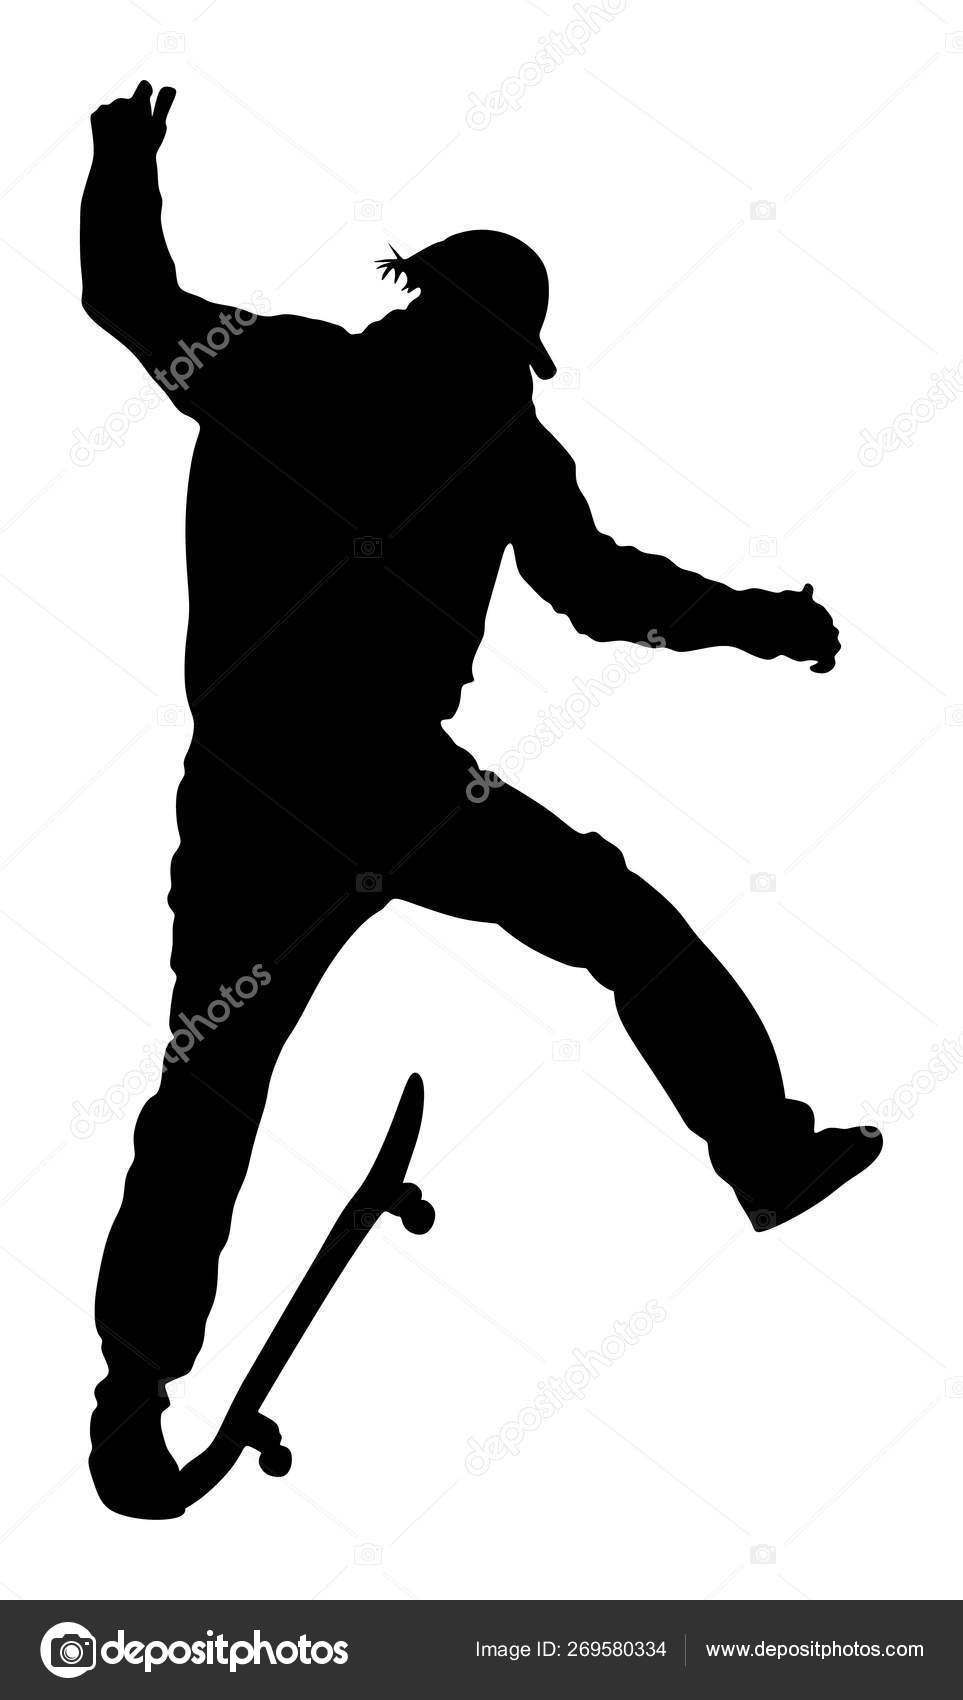 Jogo Esporte Extremo Skatista Parque Skate Truque Salto Aéreo Ilustração  imagem vetorial de Dovla982© 268598110